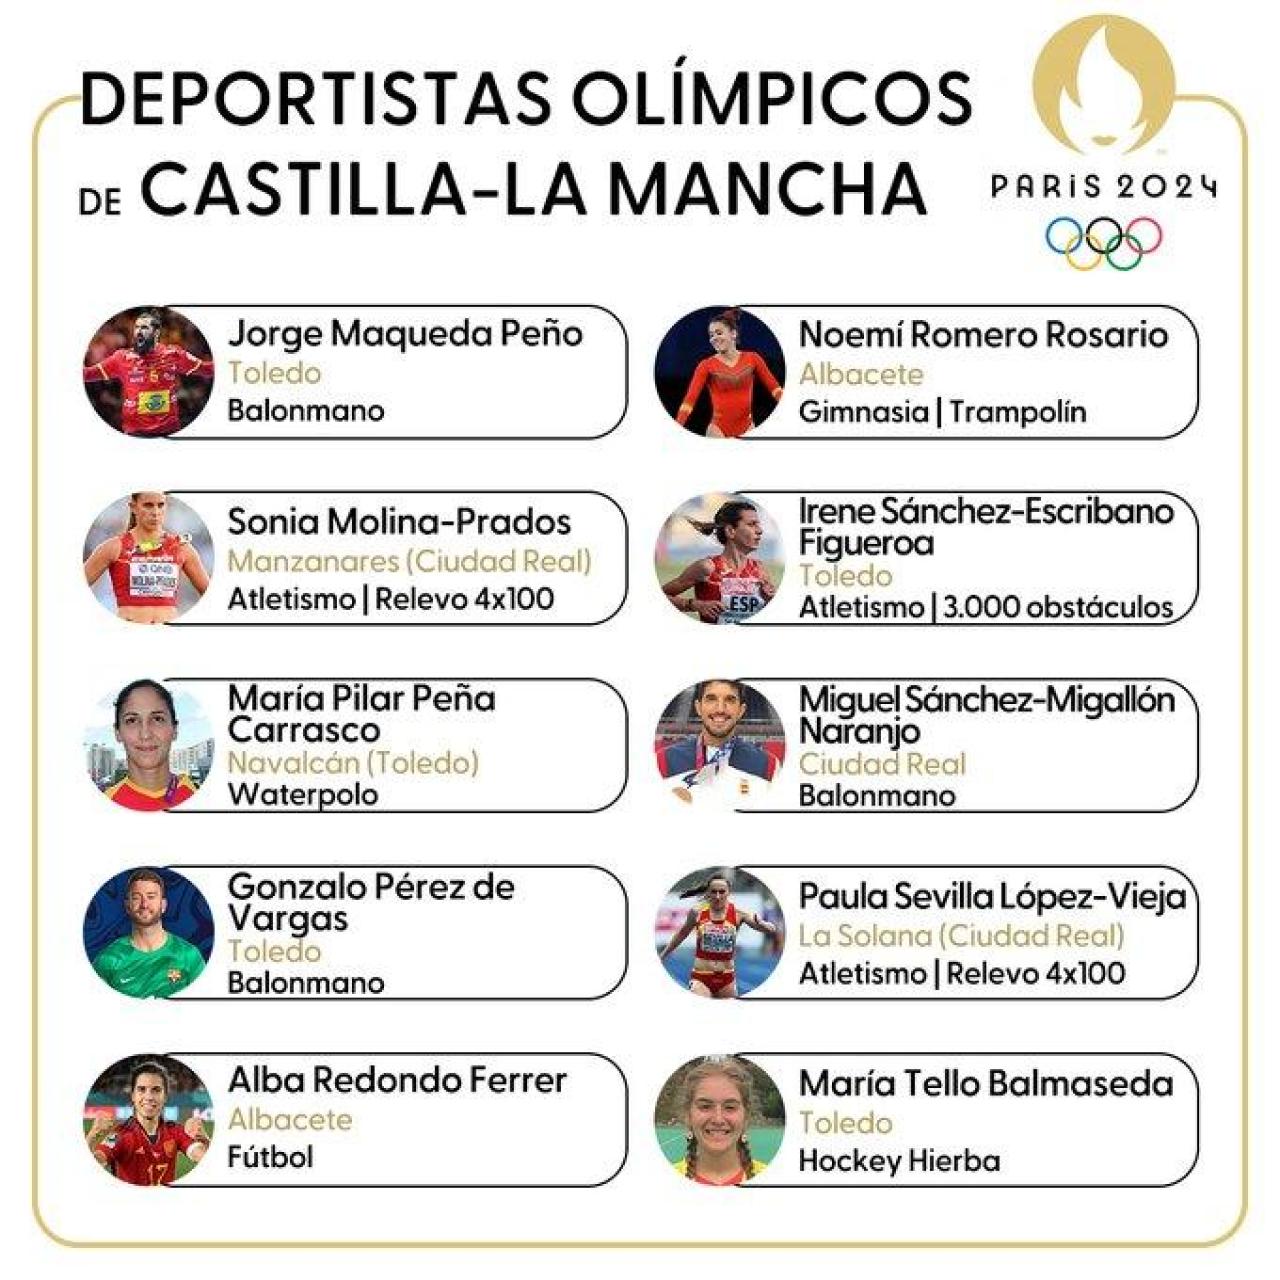 Deportistas Olímpicos de Castilla-La Mancha en París 2024.